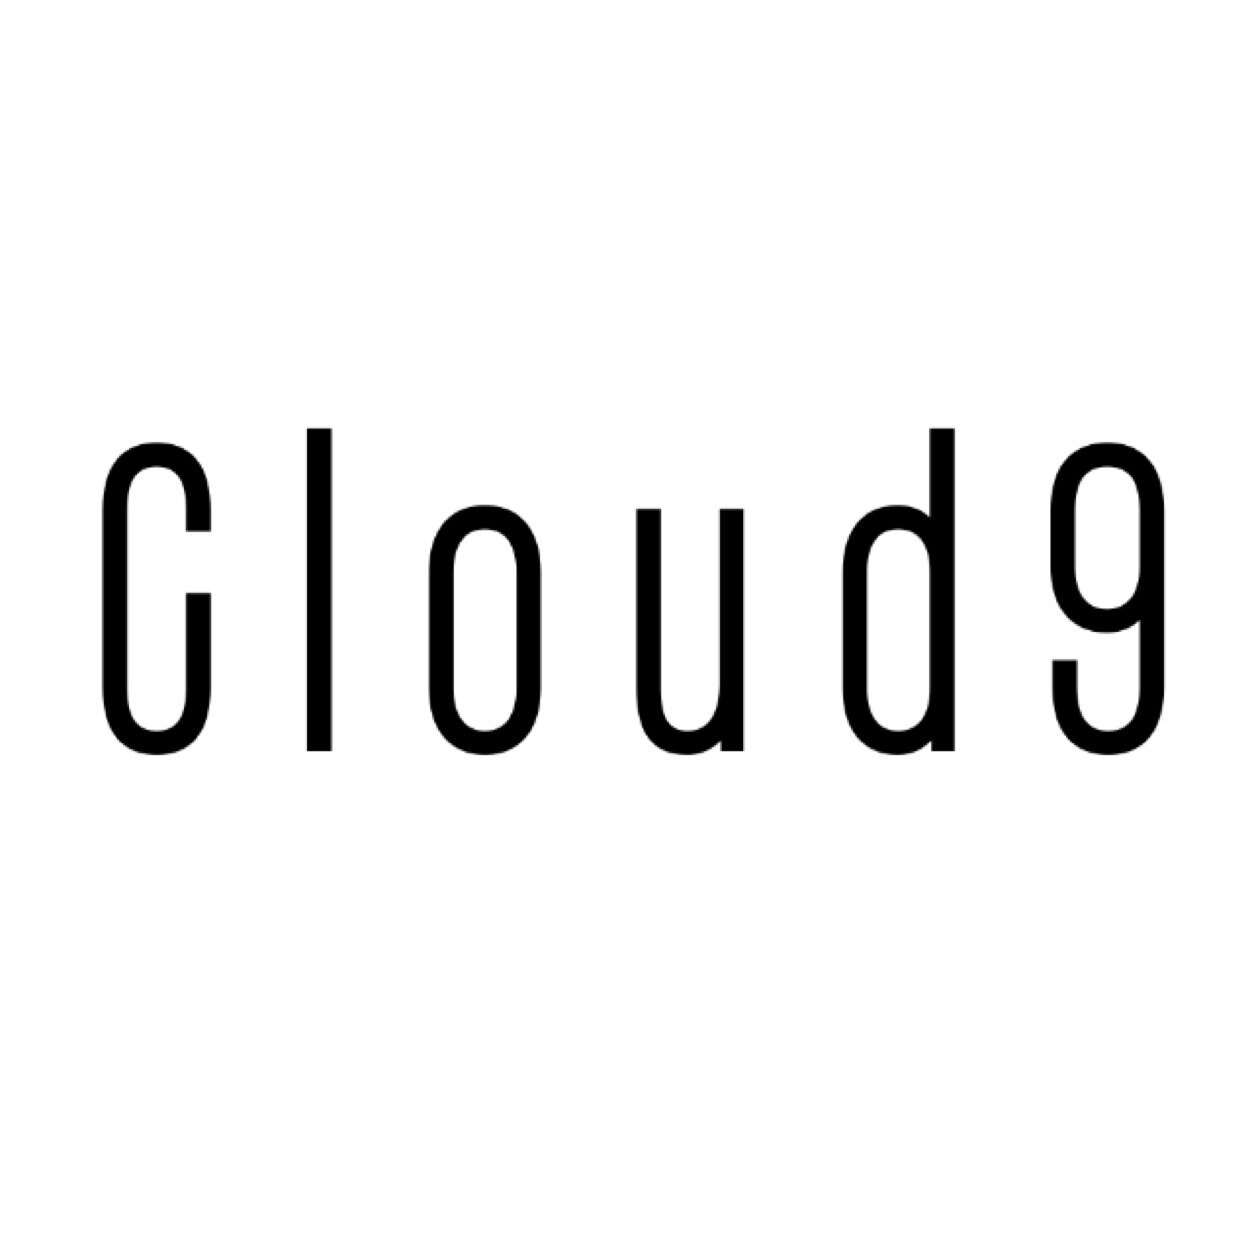 cloud9